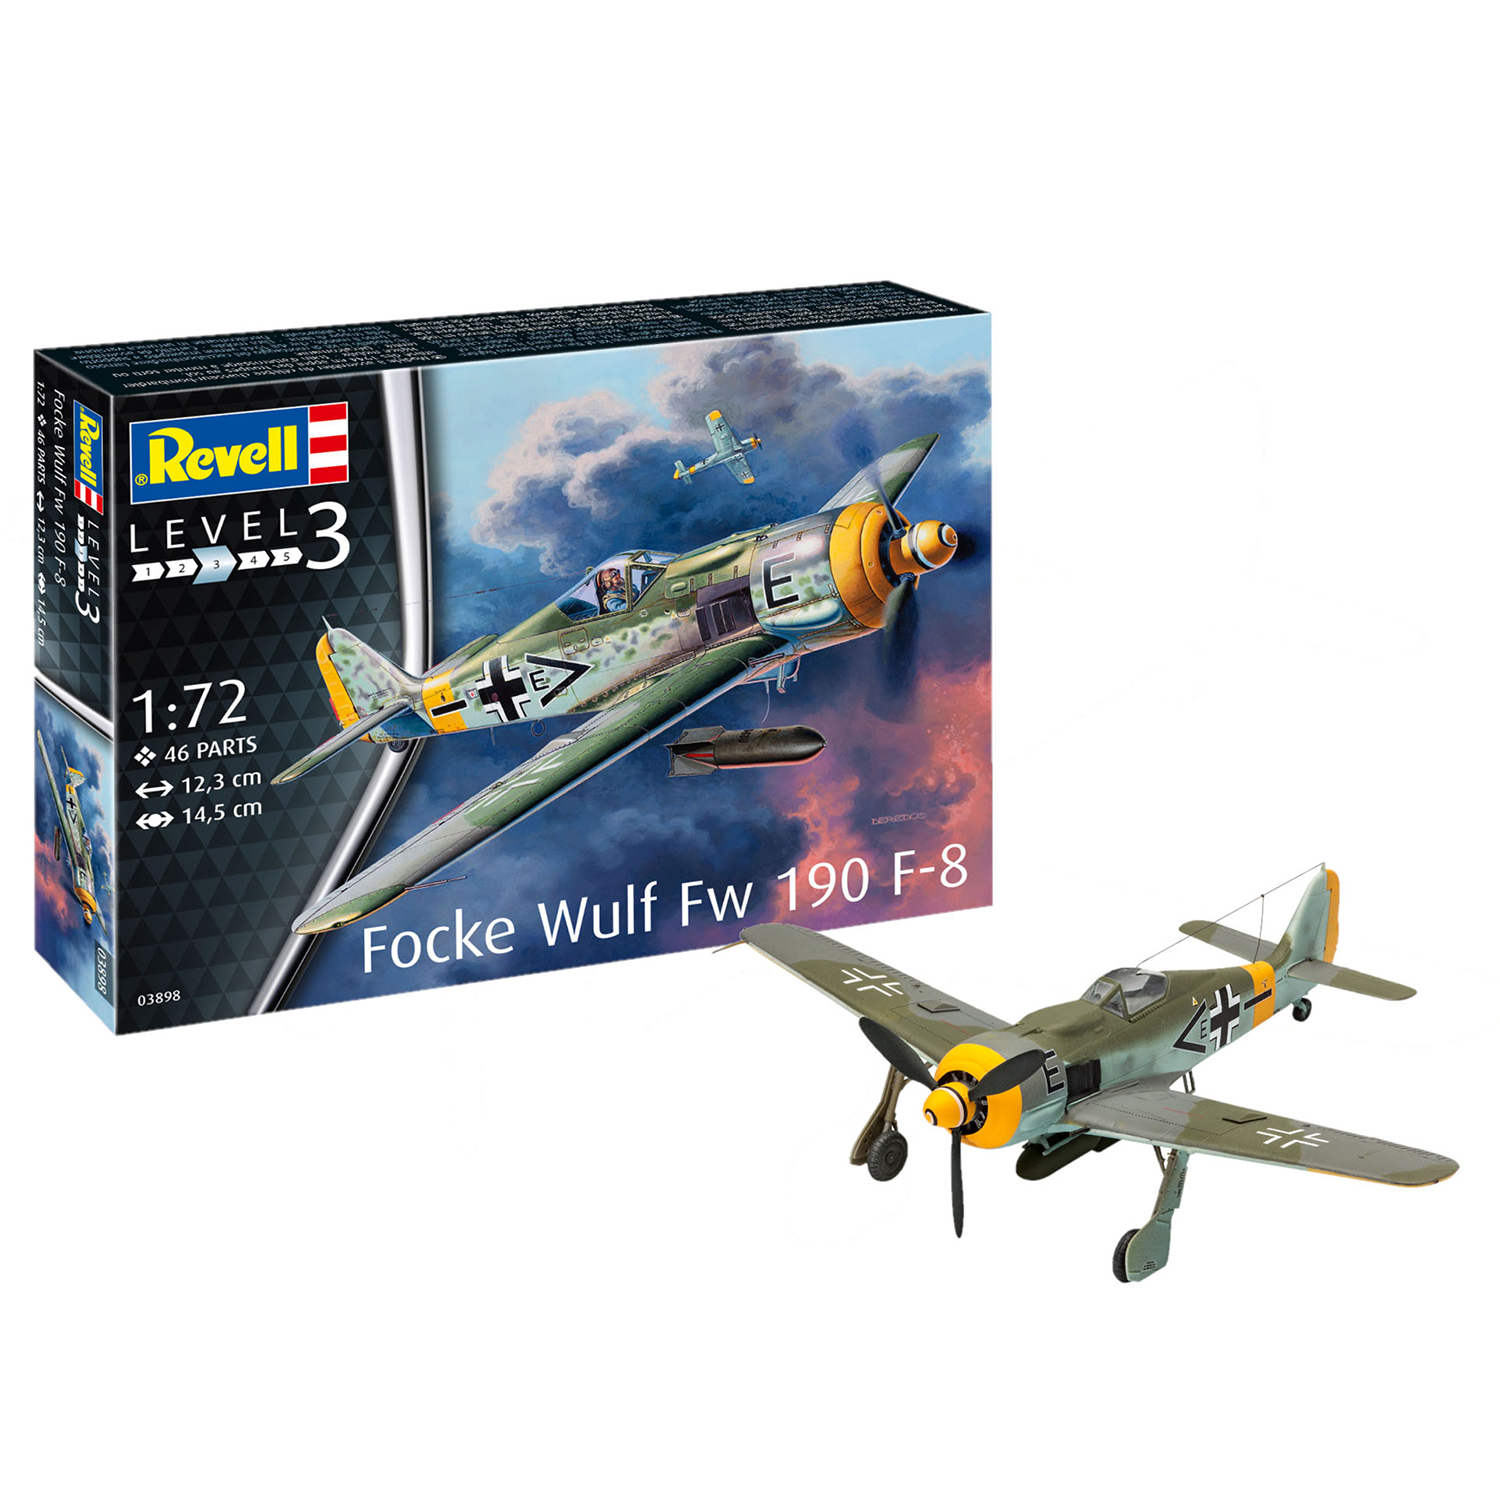 Сборная модель Revell Истребитель Focke Wulf Fw190 F-8 03898 - фото 2